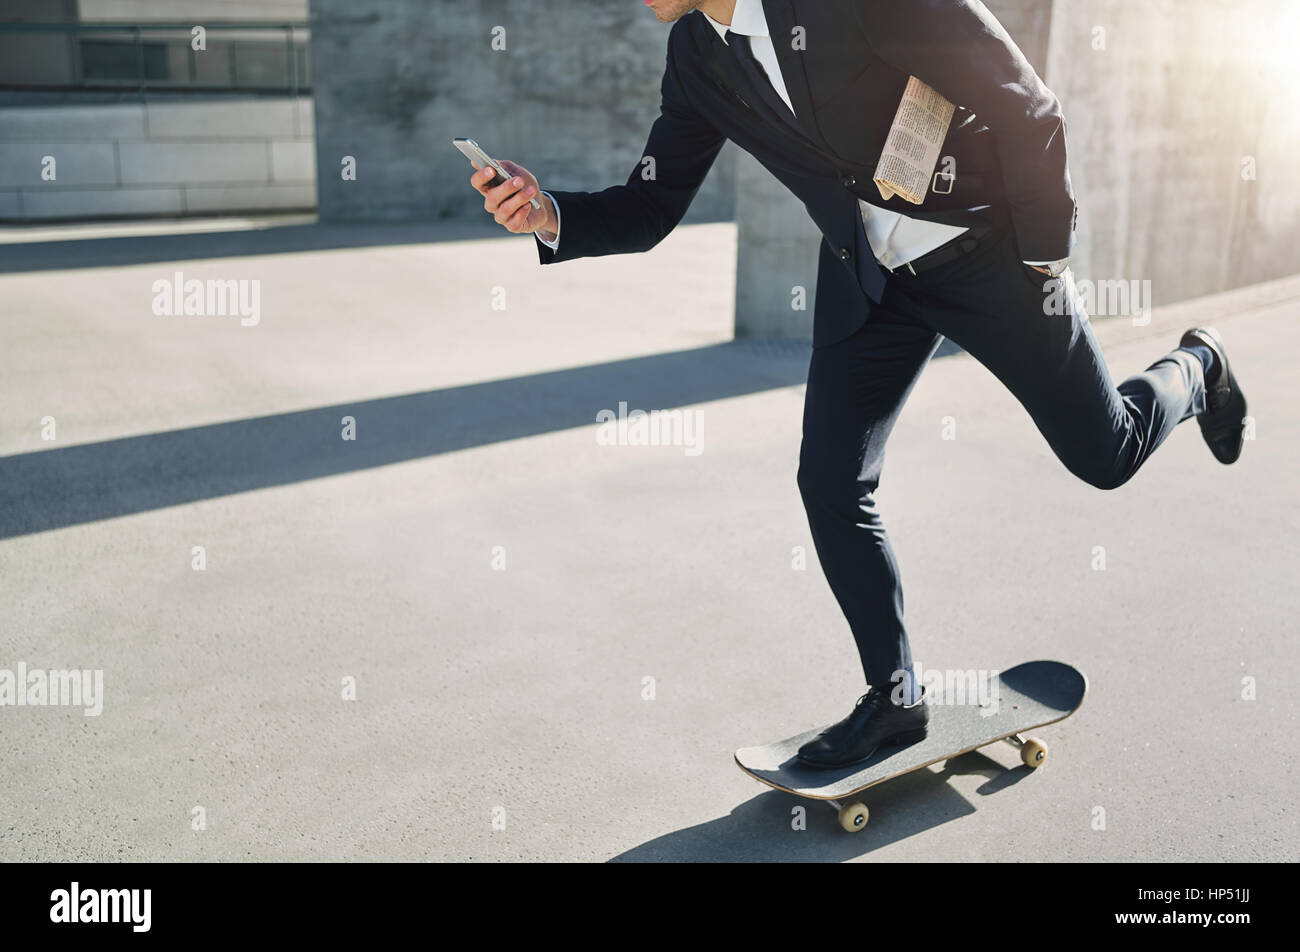 Vue de face d'un homme d'affaires sur un skateboard en regardant son téléphone en déménagement Banque D'Images